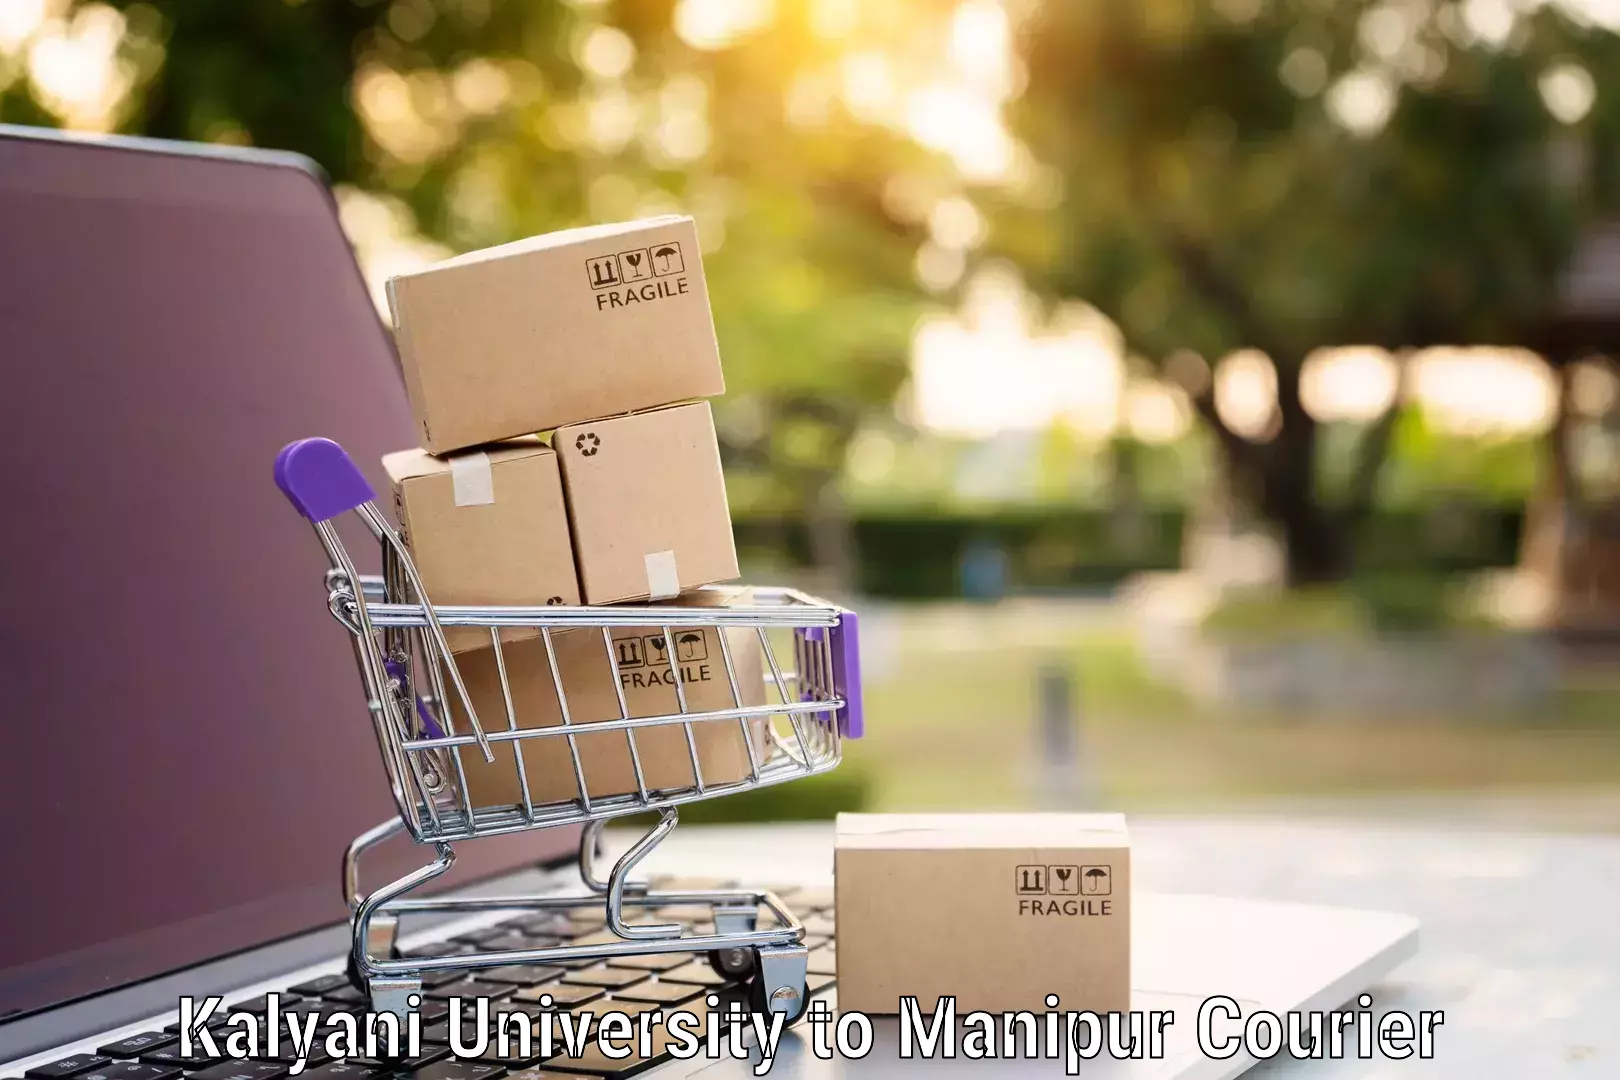 Furniture moving assistance Kalyani University to Manipur